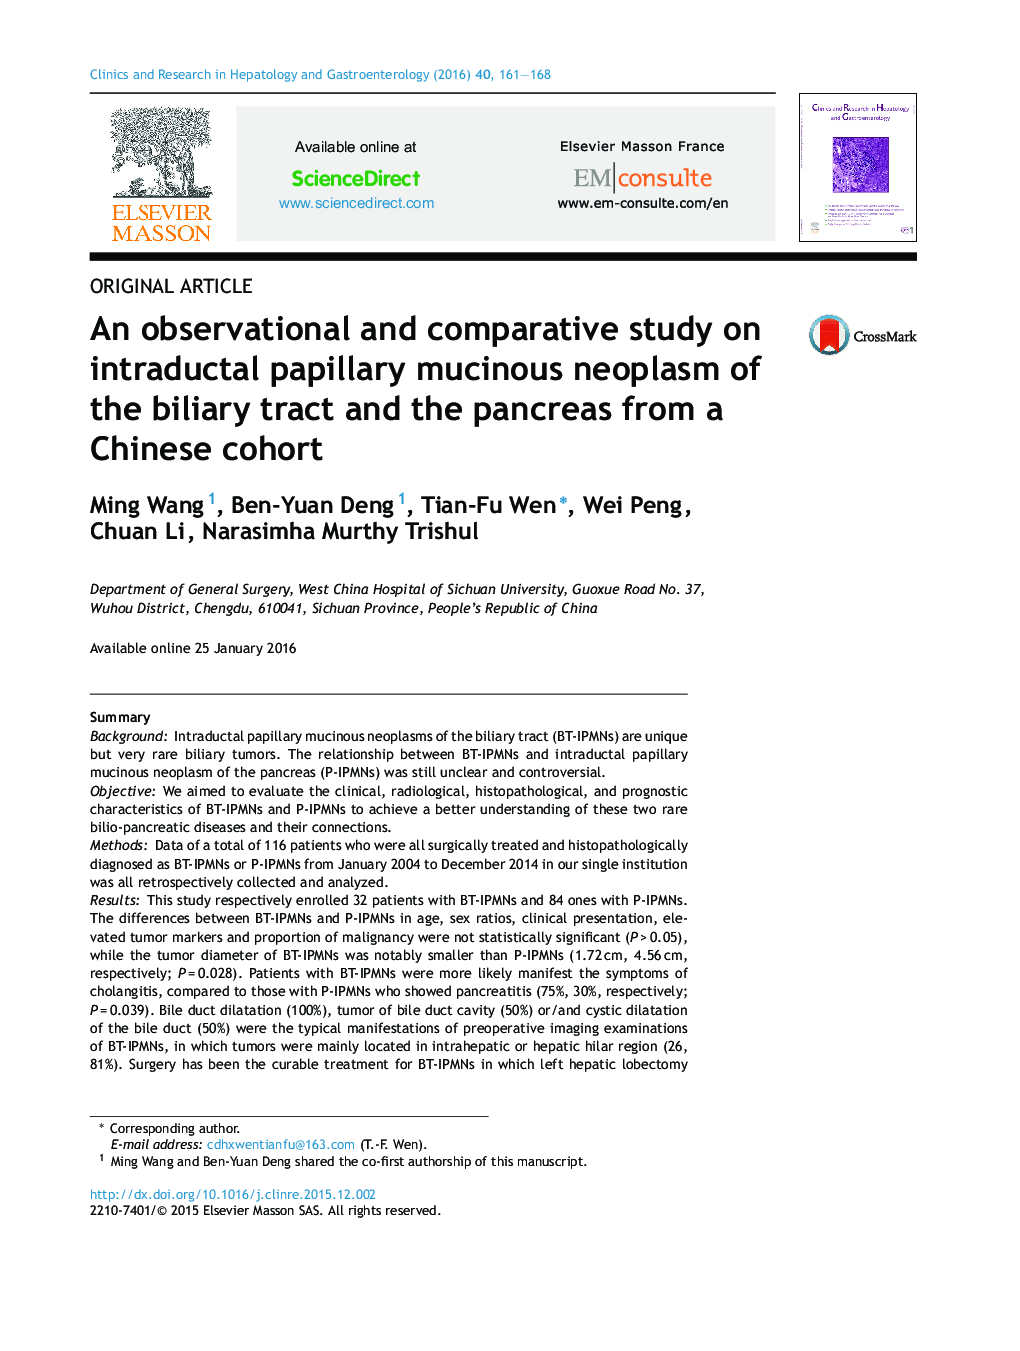 یک مطالعه مشاهده ای و مقایسه ای در داخل مجاری، نئوپلاسم موسینوس پاپیلاری از دستگاه صفراوی و پانکراس از یک گروه چینی